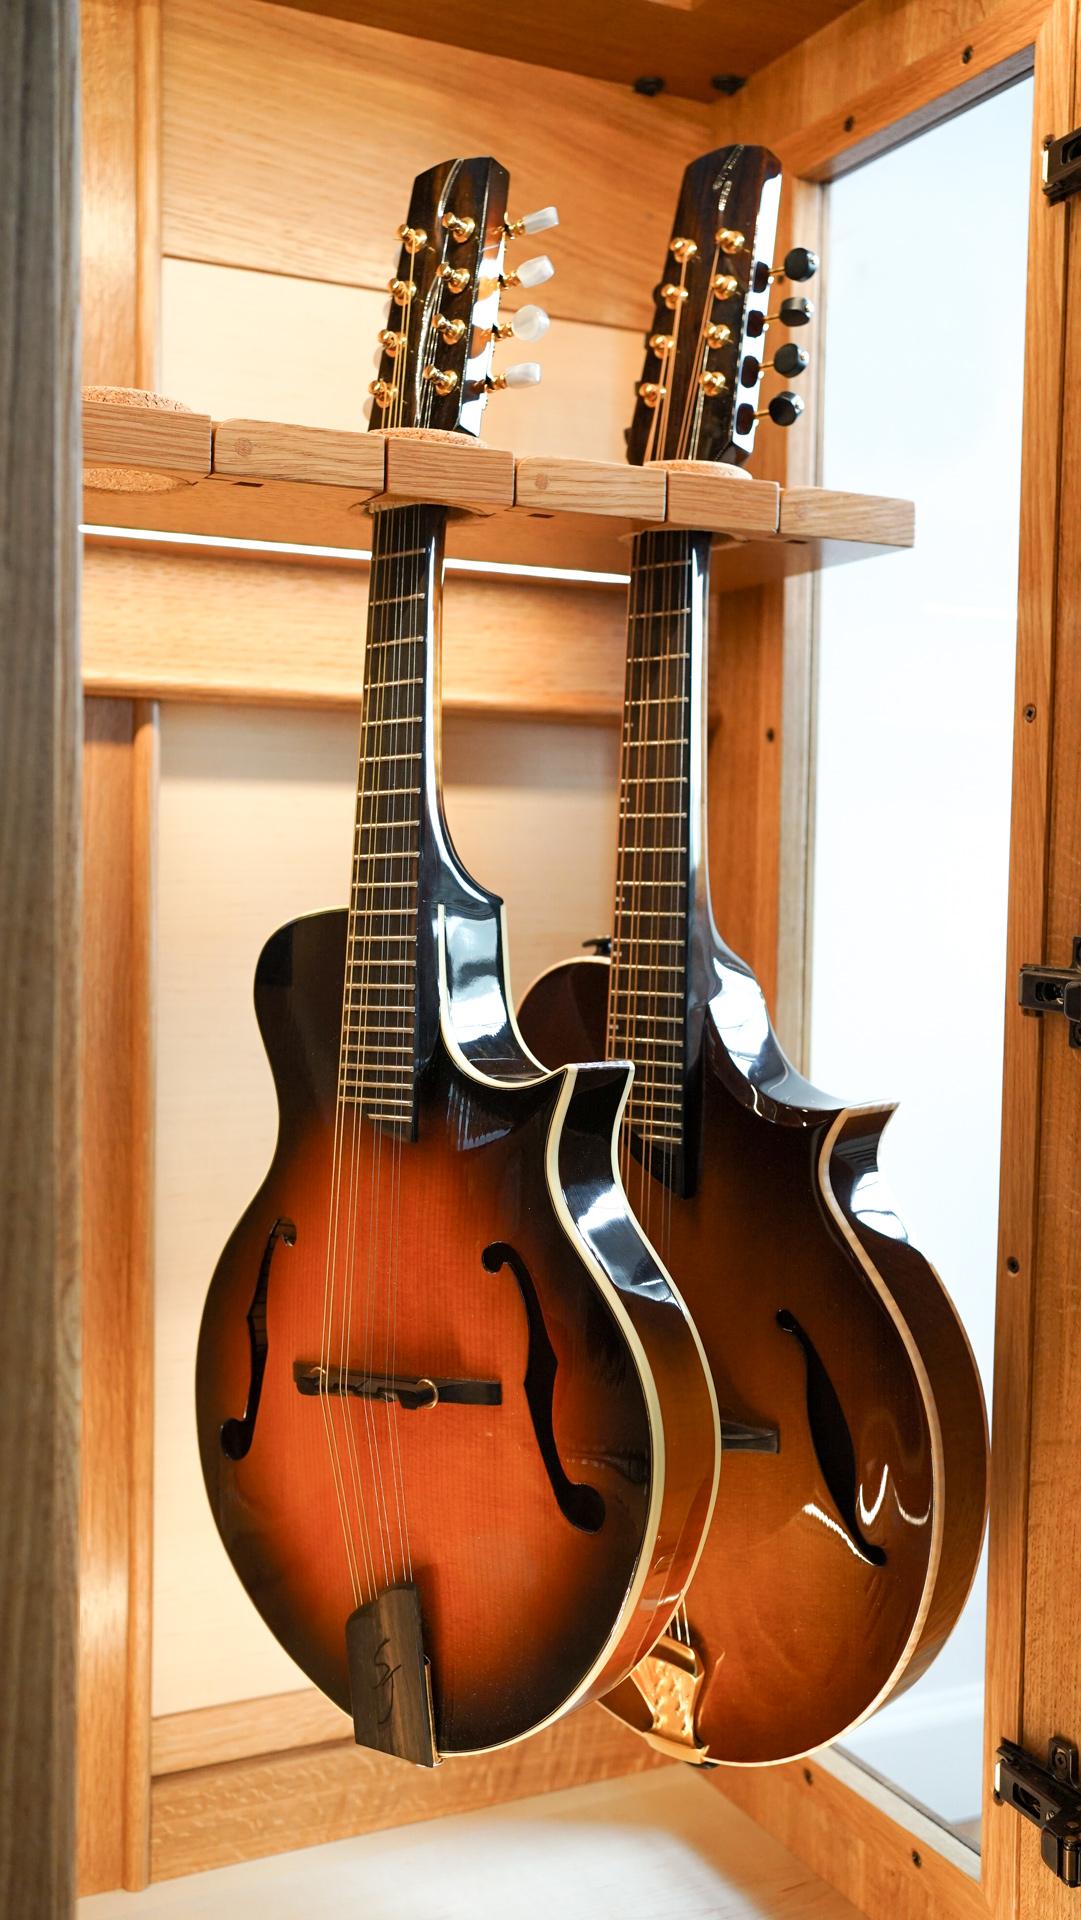 Le String Habitat est une vitrine à humidité contrôlée conçue pour accueillir des instruments à cordes de petite taille comme les violons, les violons, les mandolines, les mandoles et les ukulélés. Les instruments sont suspendus en toute sécurité